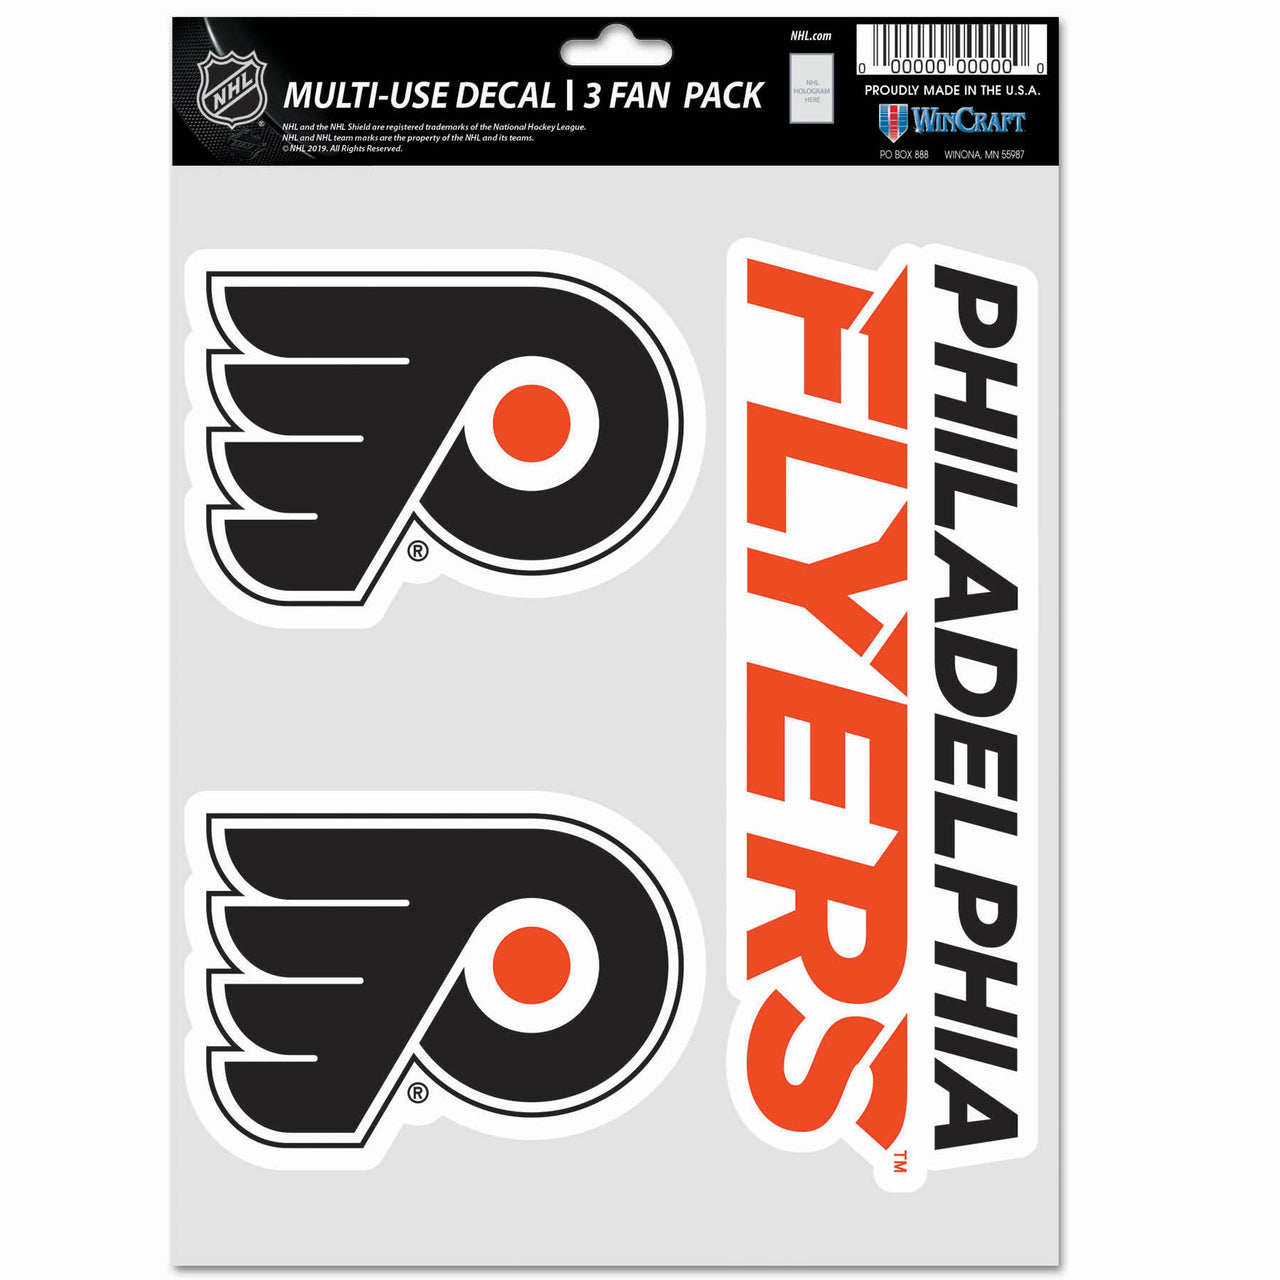 Gritty Philadelphia Flyers Scoreboard Bobblehead - Dynasty Sports & Framing